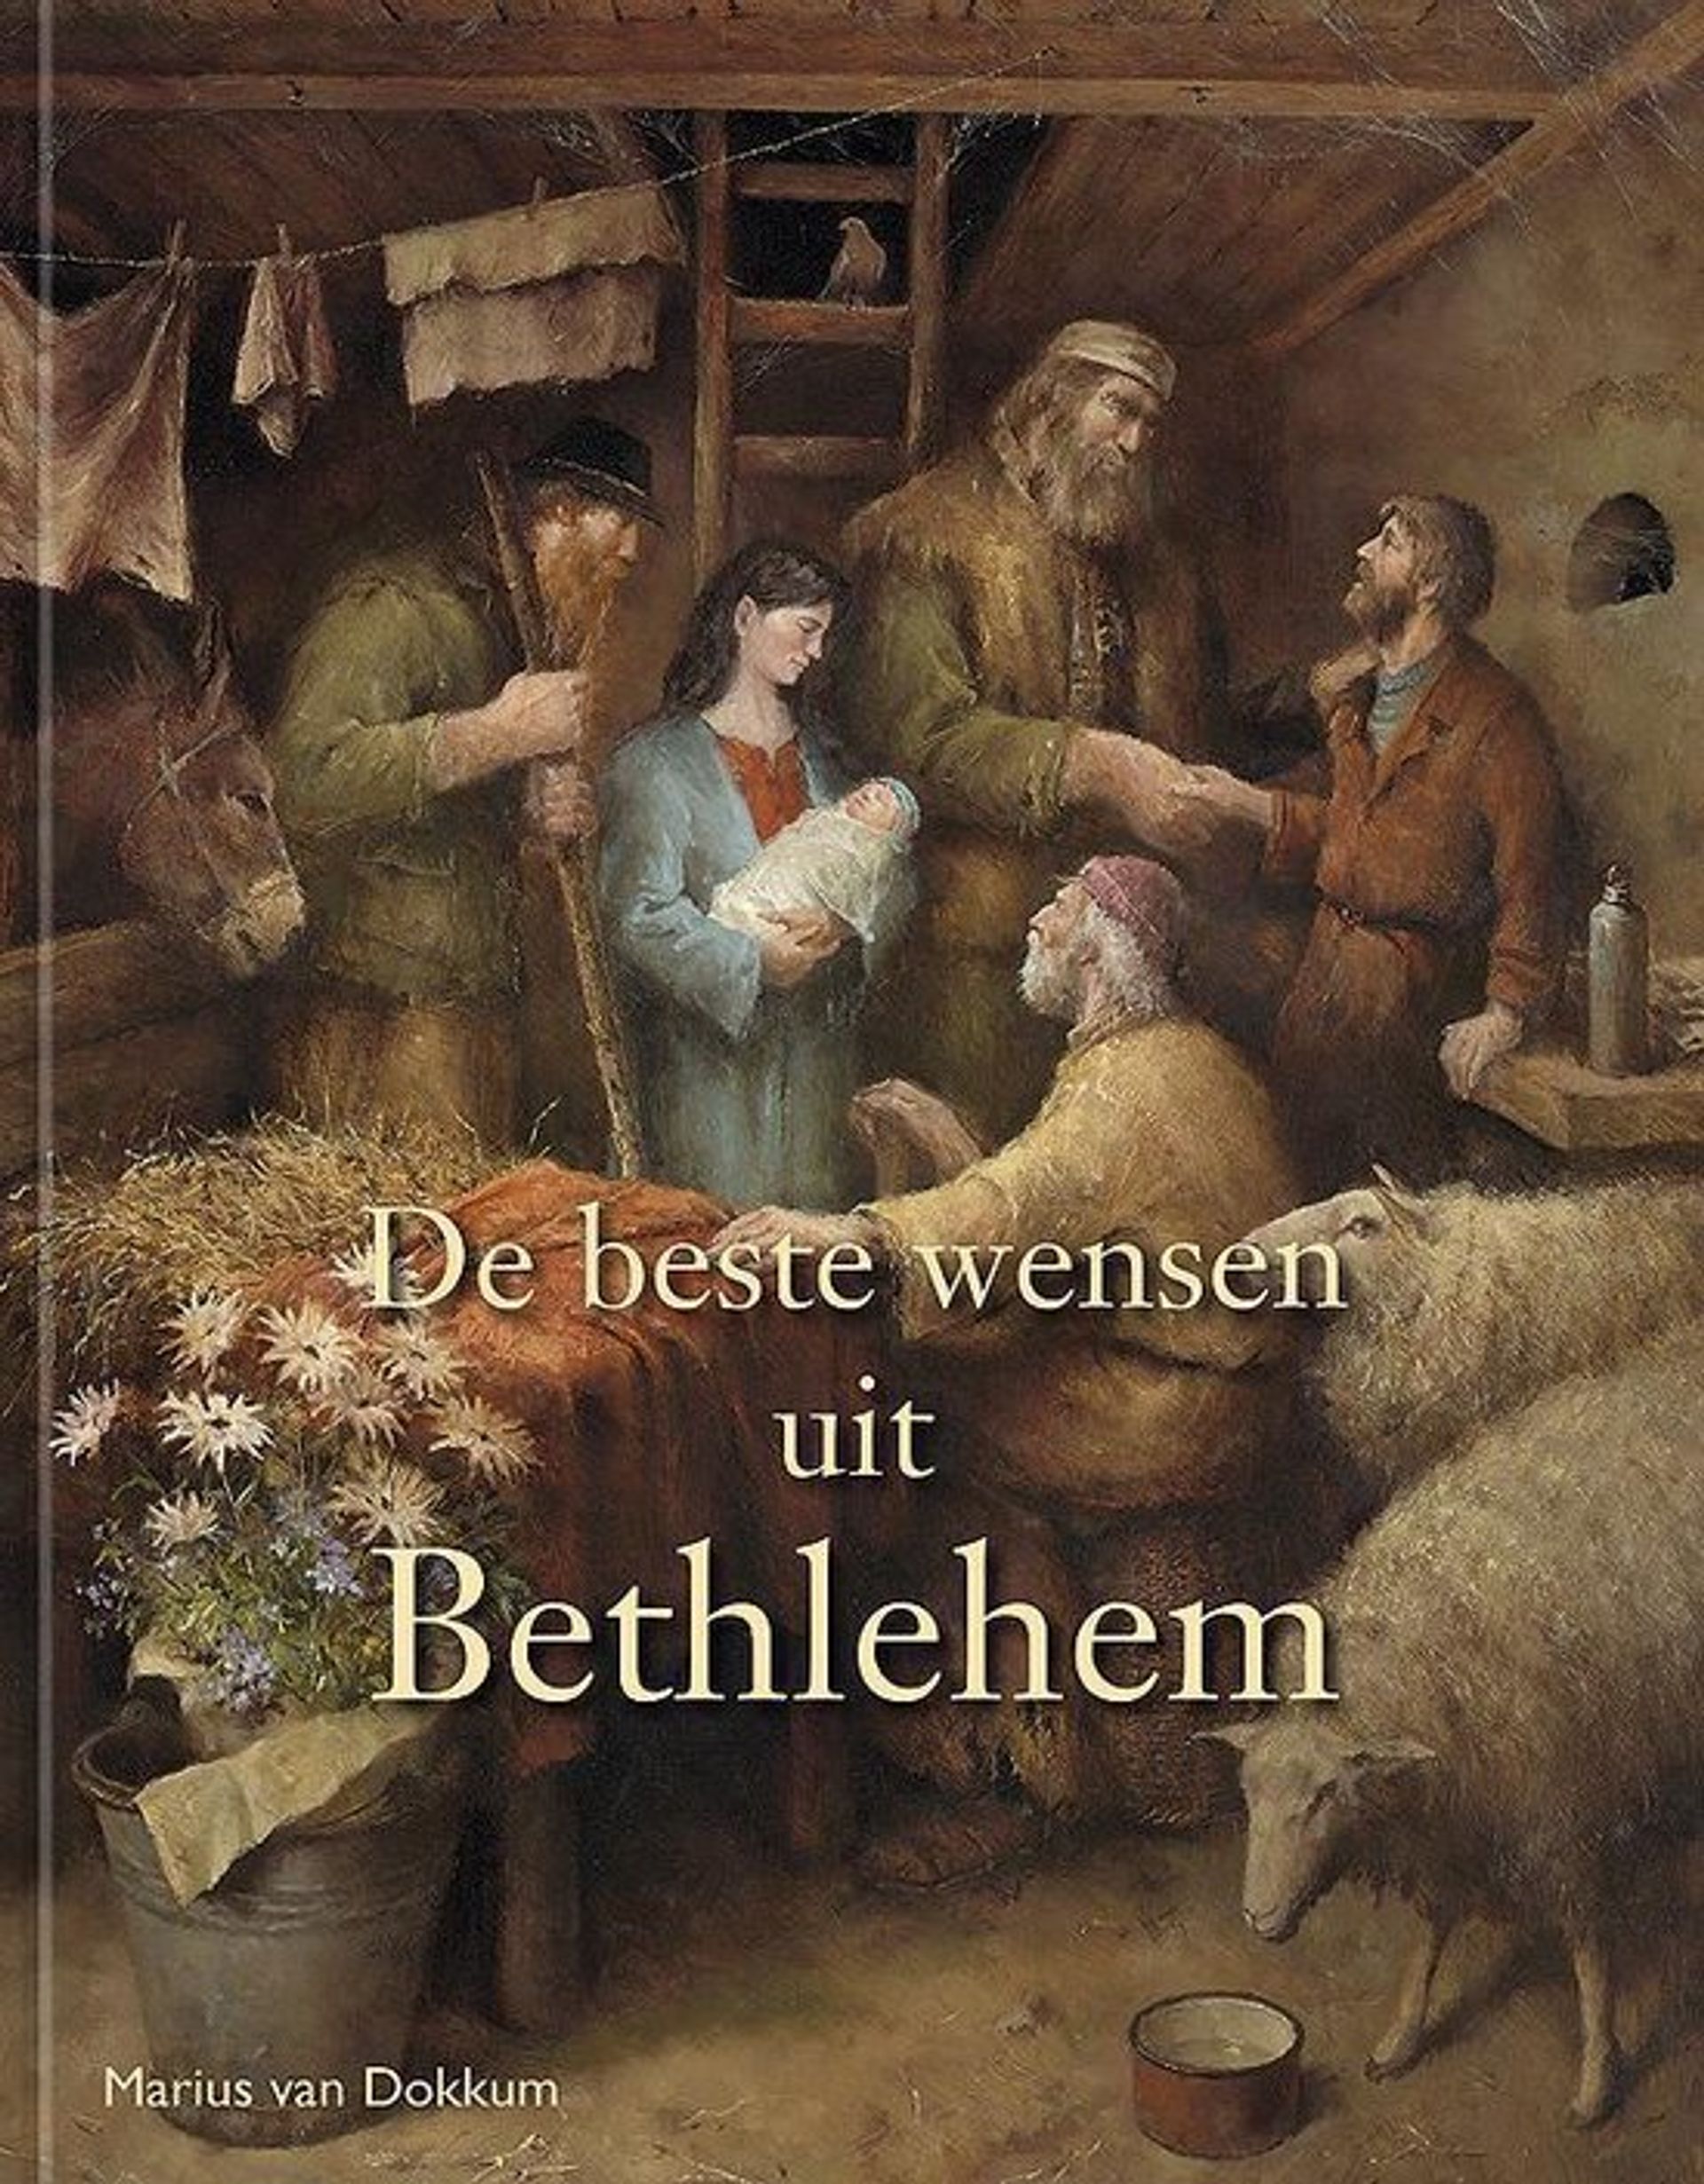 Boekcover 'De beste wensen uit Bethlehem'